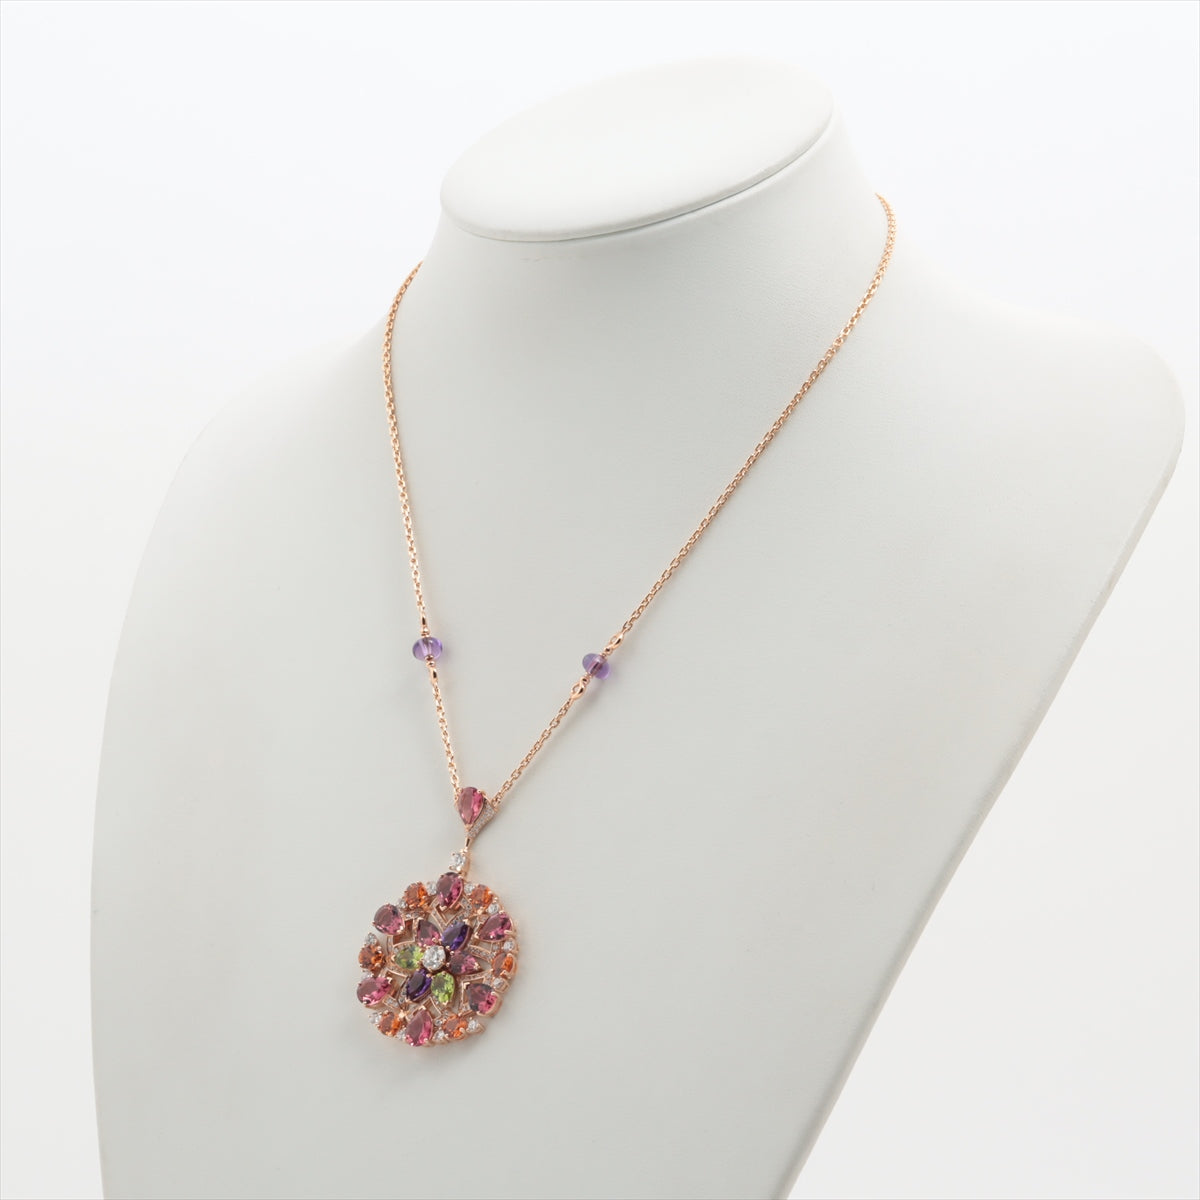 Bvlgari Diva Dream Colored stone Diamond Necklace 750(PG) 26.8g 355907